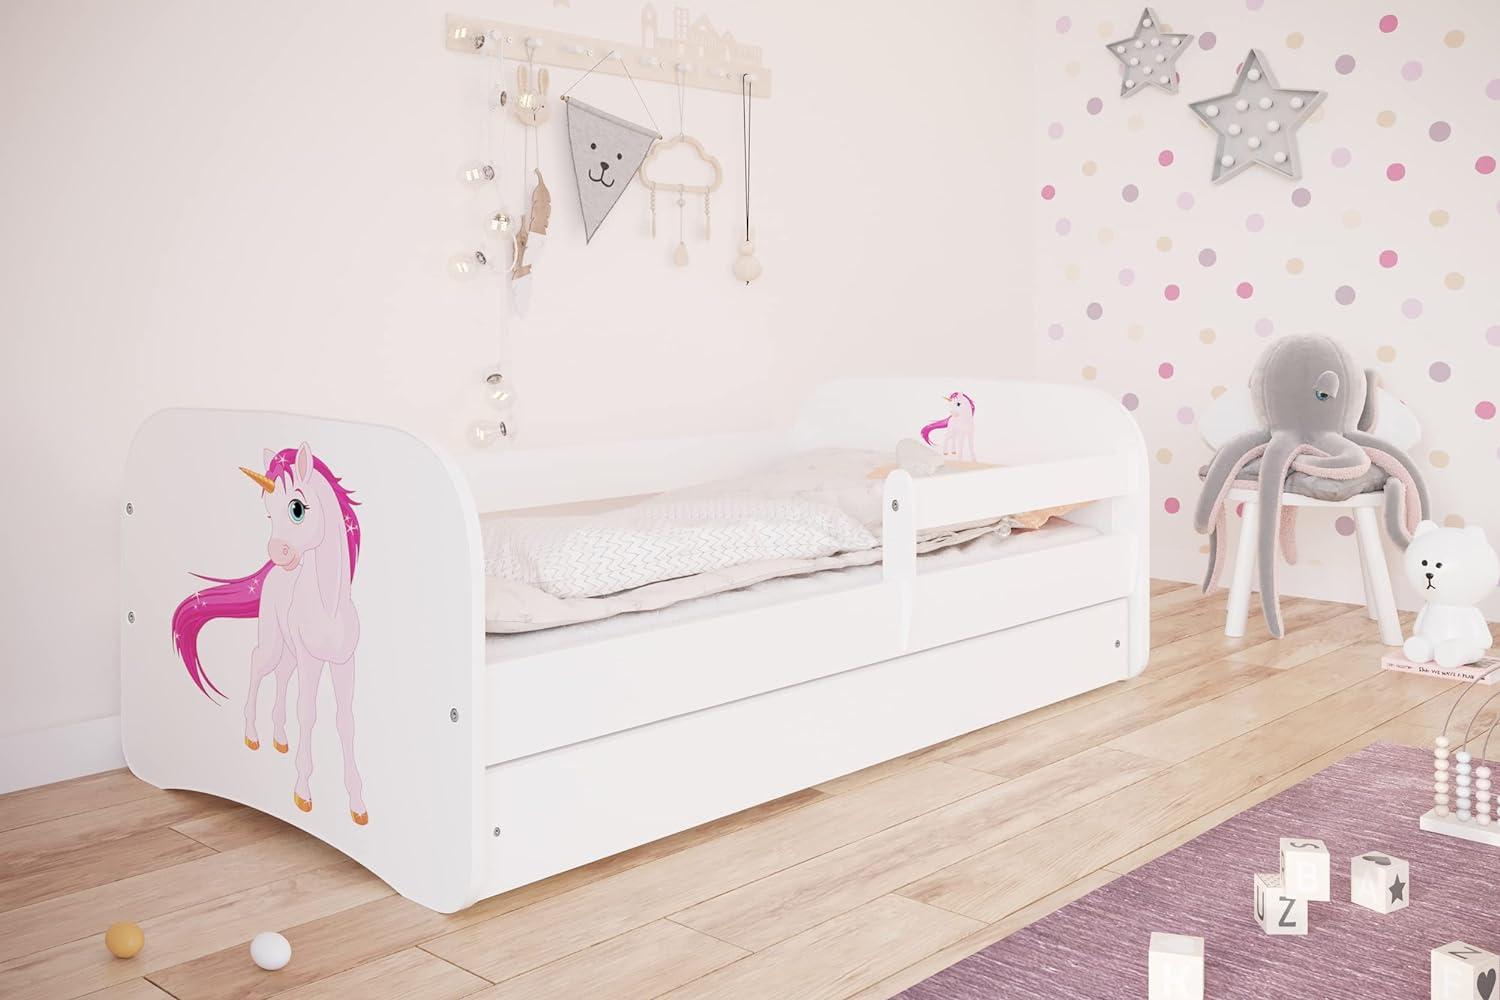 Kocot Kids 'Einhorn' Einzelbett weiß 70x140 cm inkl. Rausfallschutz, Matratze, Schublade und Lattenrost Bild 1